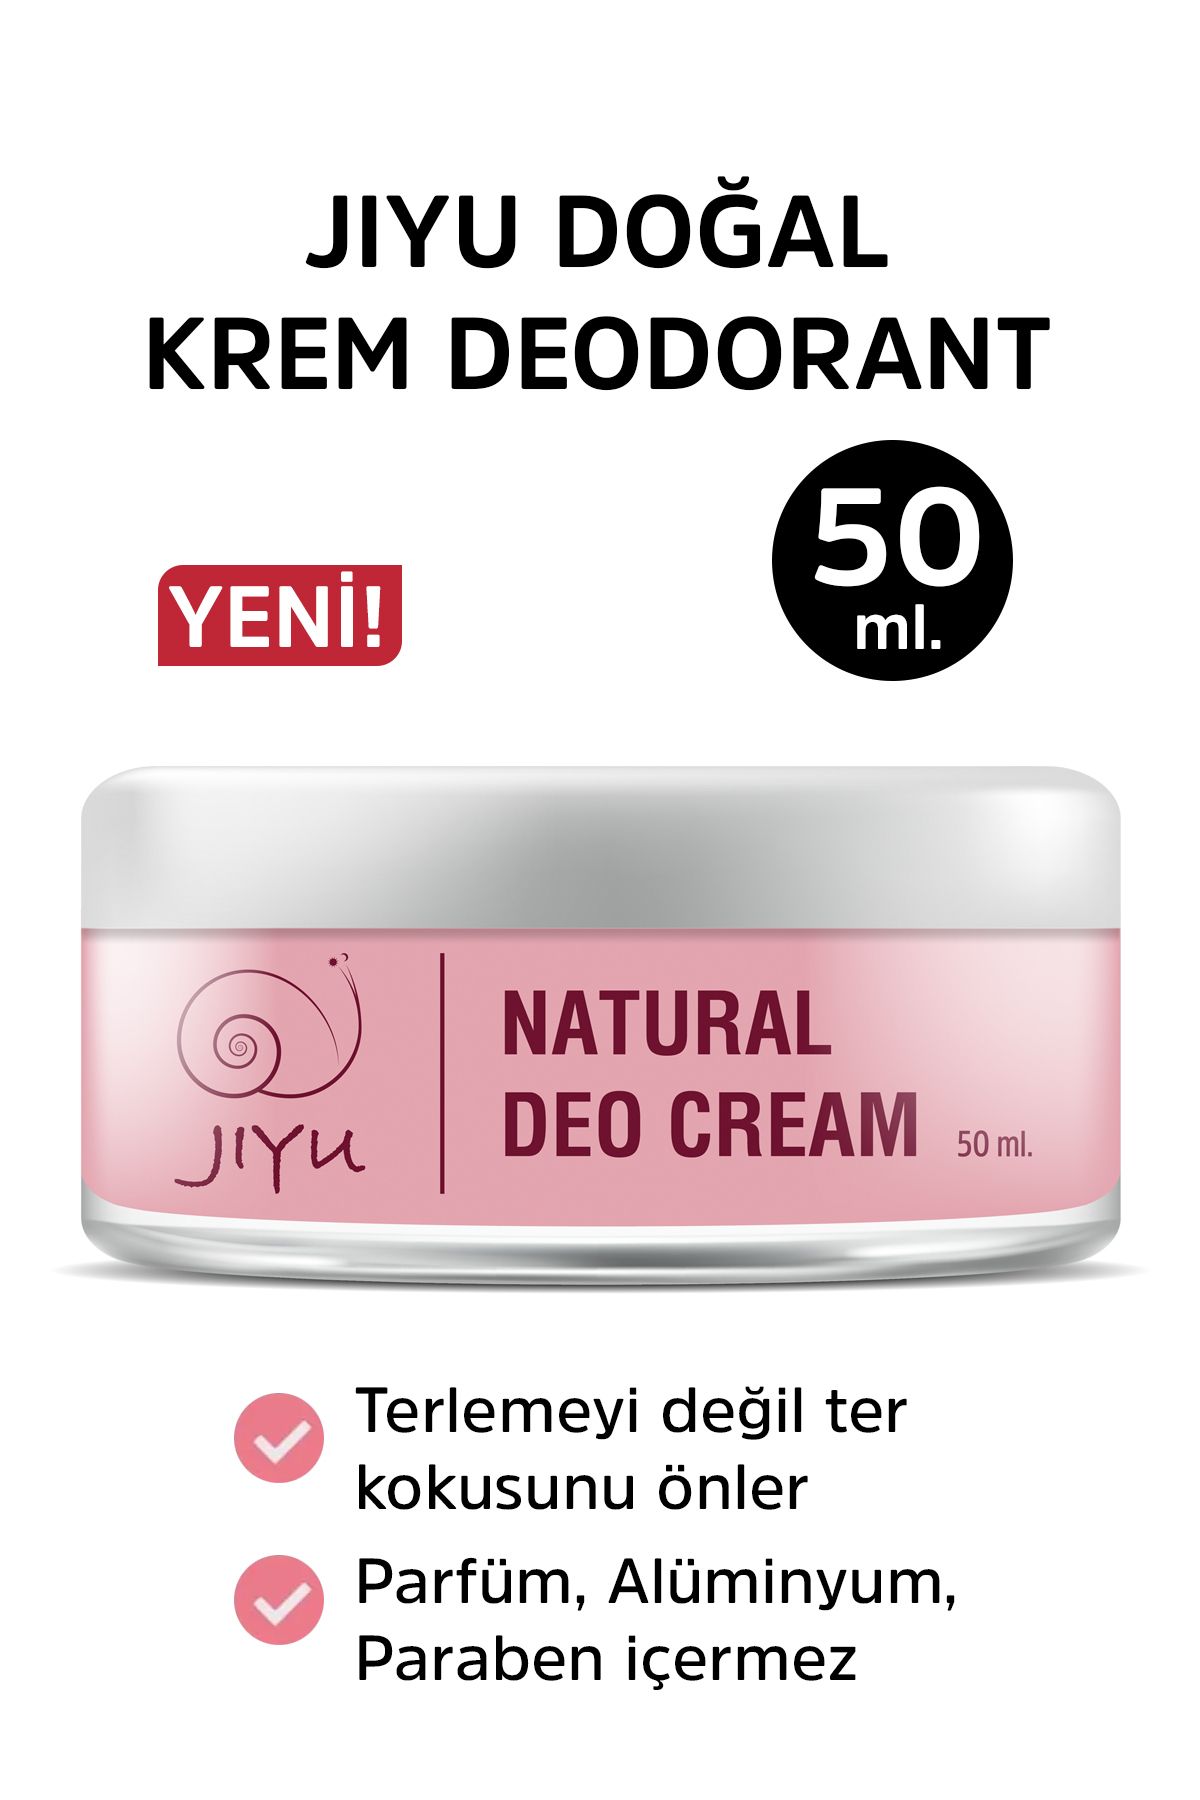 JIYU Krem Deodorant Ter Kokusu Önleyici Beyazlatıcı %100 Doğal Deodorant Krem Roll-on 50 Ml.